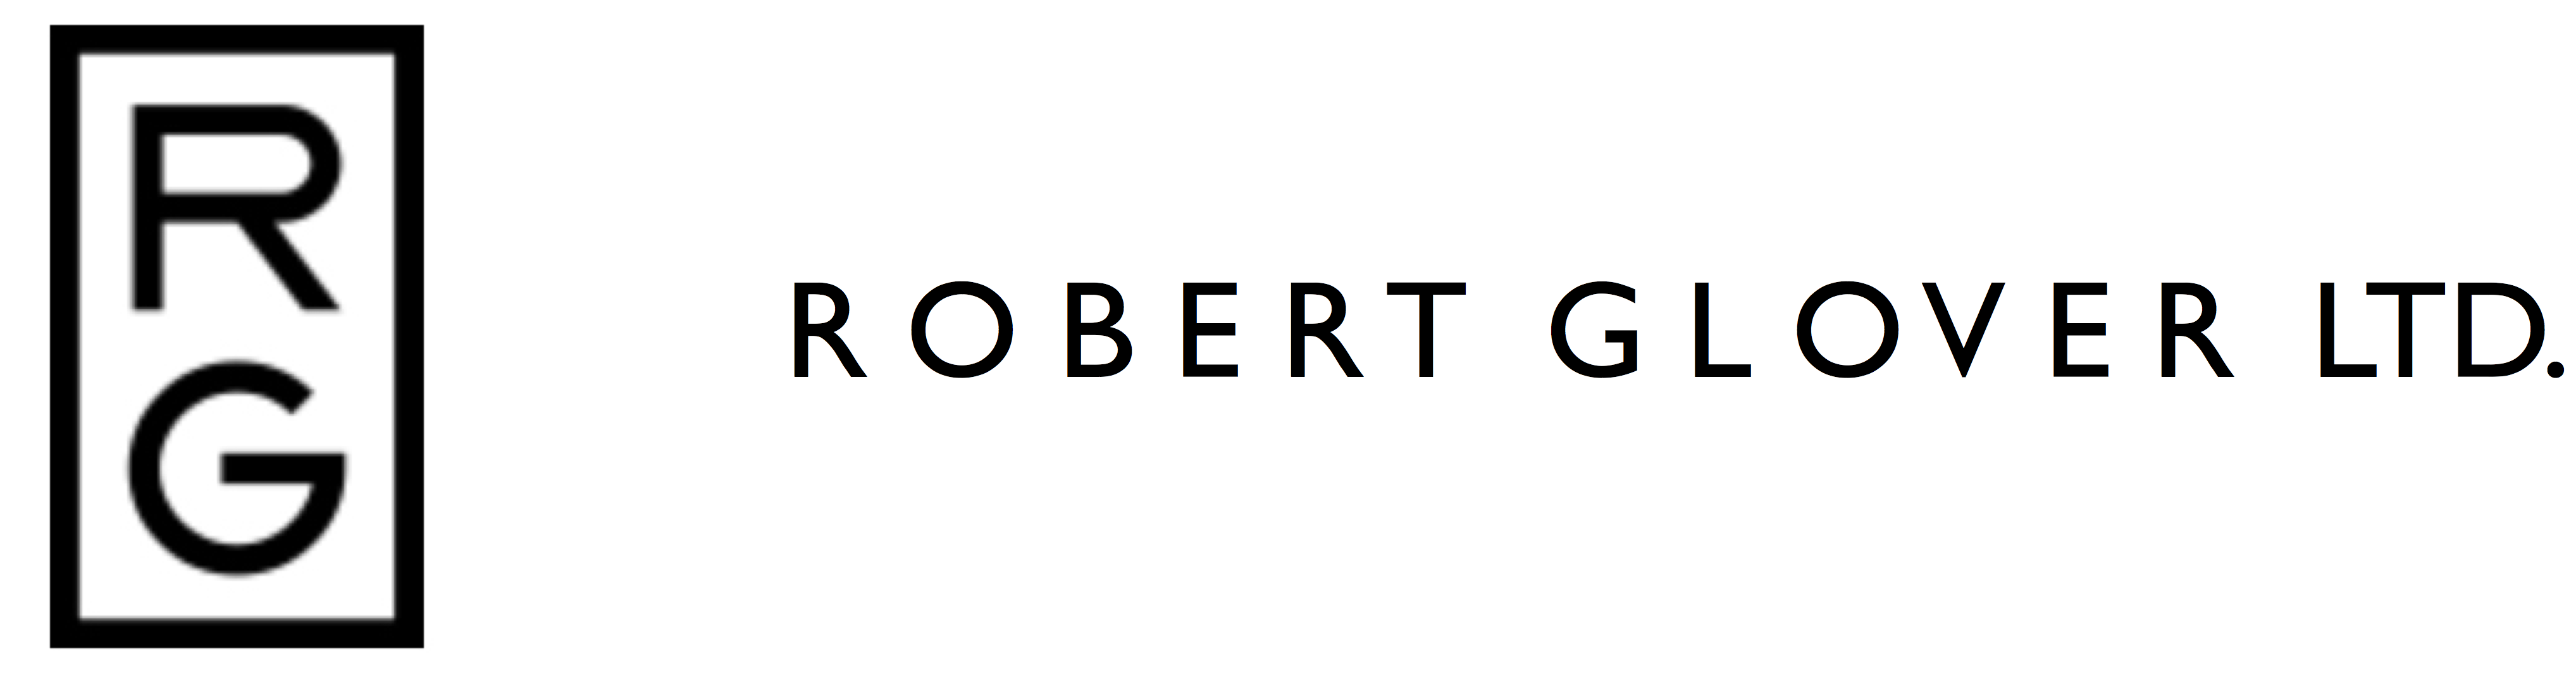 ROBERT GLOVER Ltd